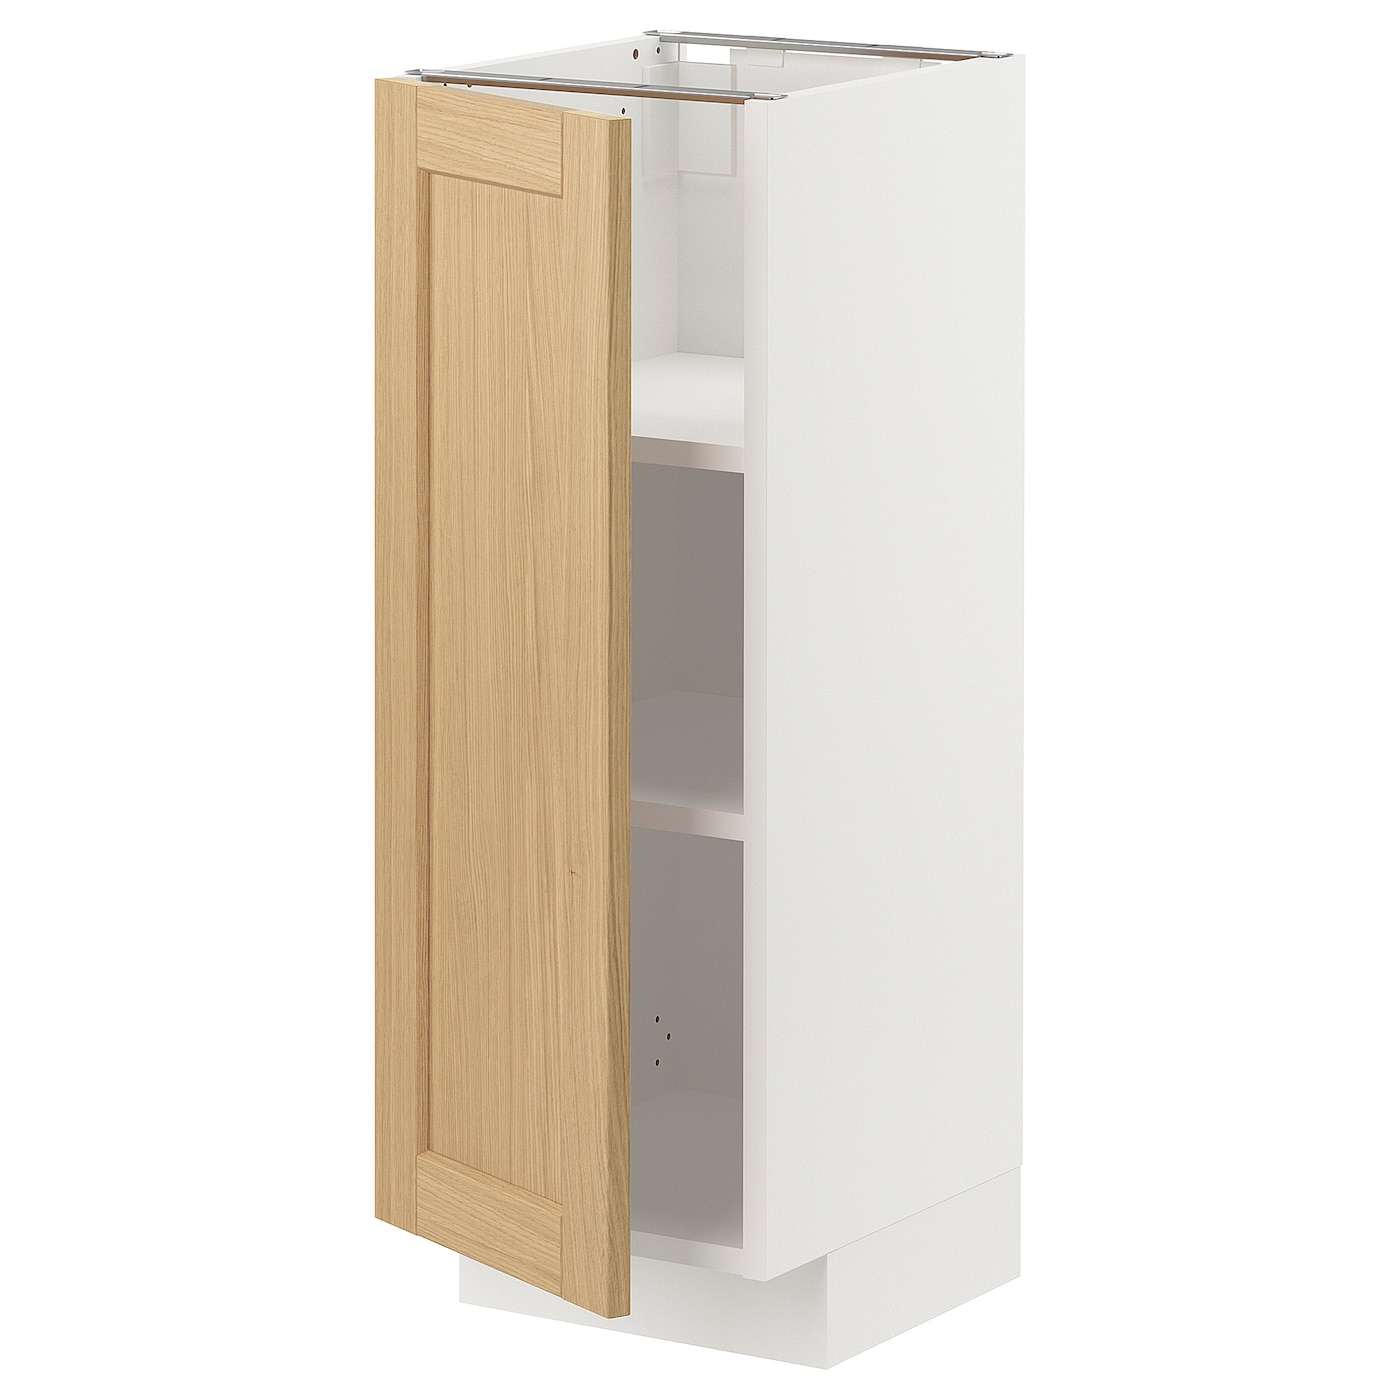 Напольный шкаф - METOD IKEA/ МЕТОД ИКЕА,  30х37 см, белый/под беленый дуб